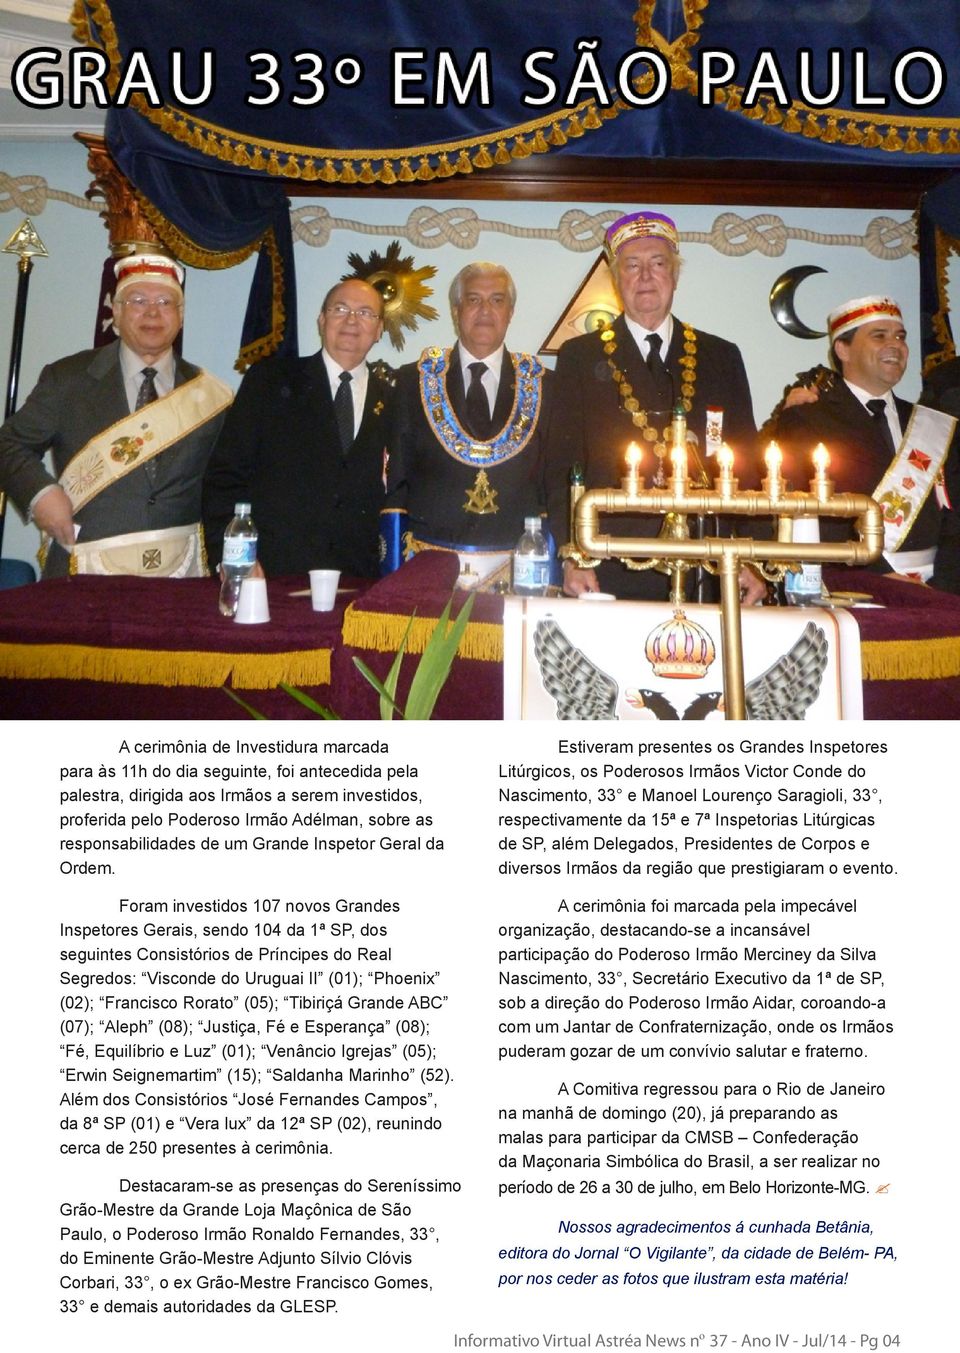 Foram investidos 107 novos Grandes Inspetores Gerais, sendo 104 da 1ª SP, dos seguintes Consistórios de Príncipes do Real Segredos: Visconde do Uruguai II (01); Phoenix (02); Francisco Rorato (05);